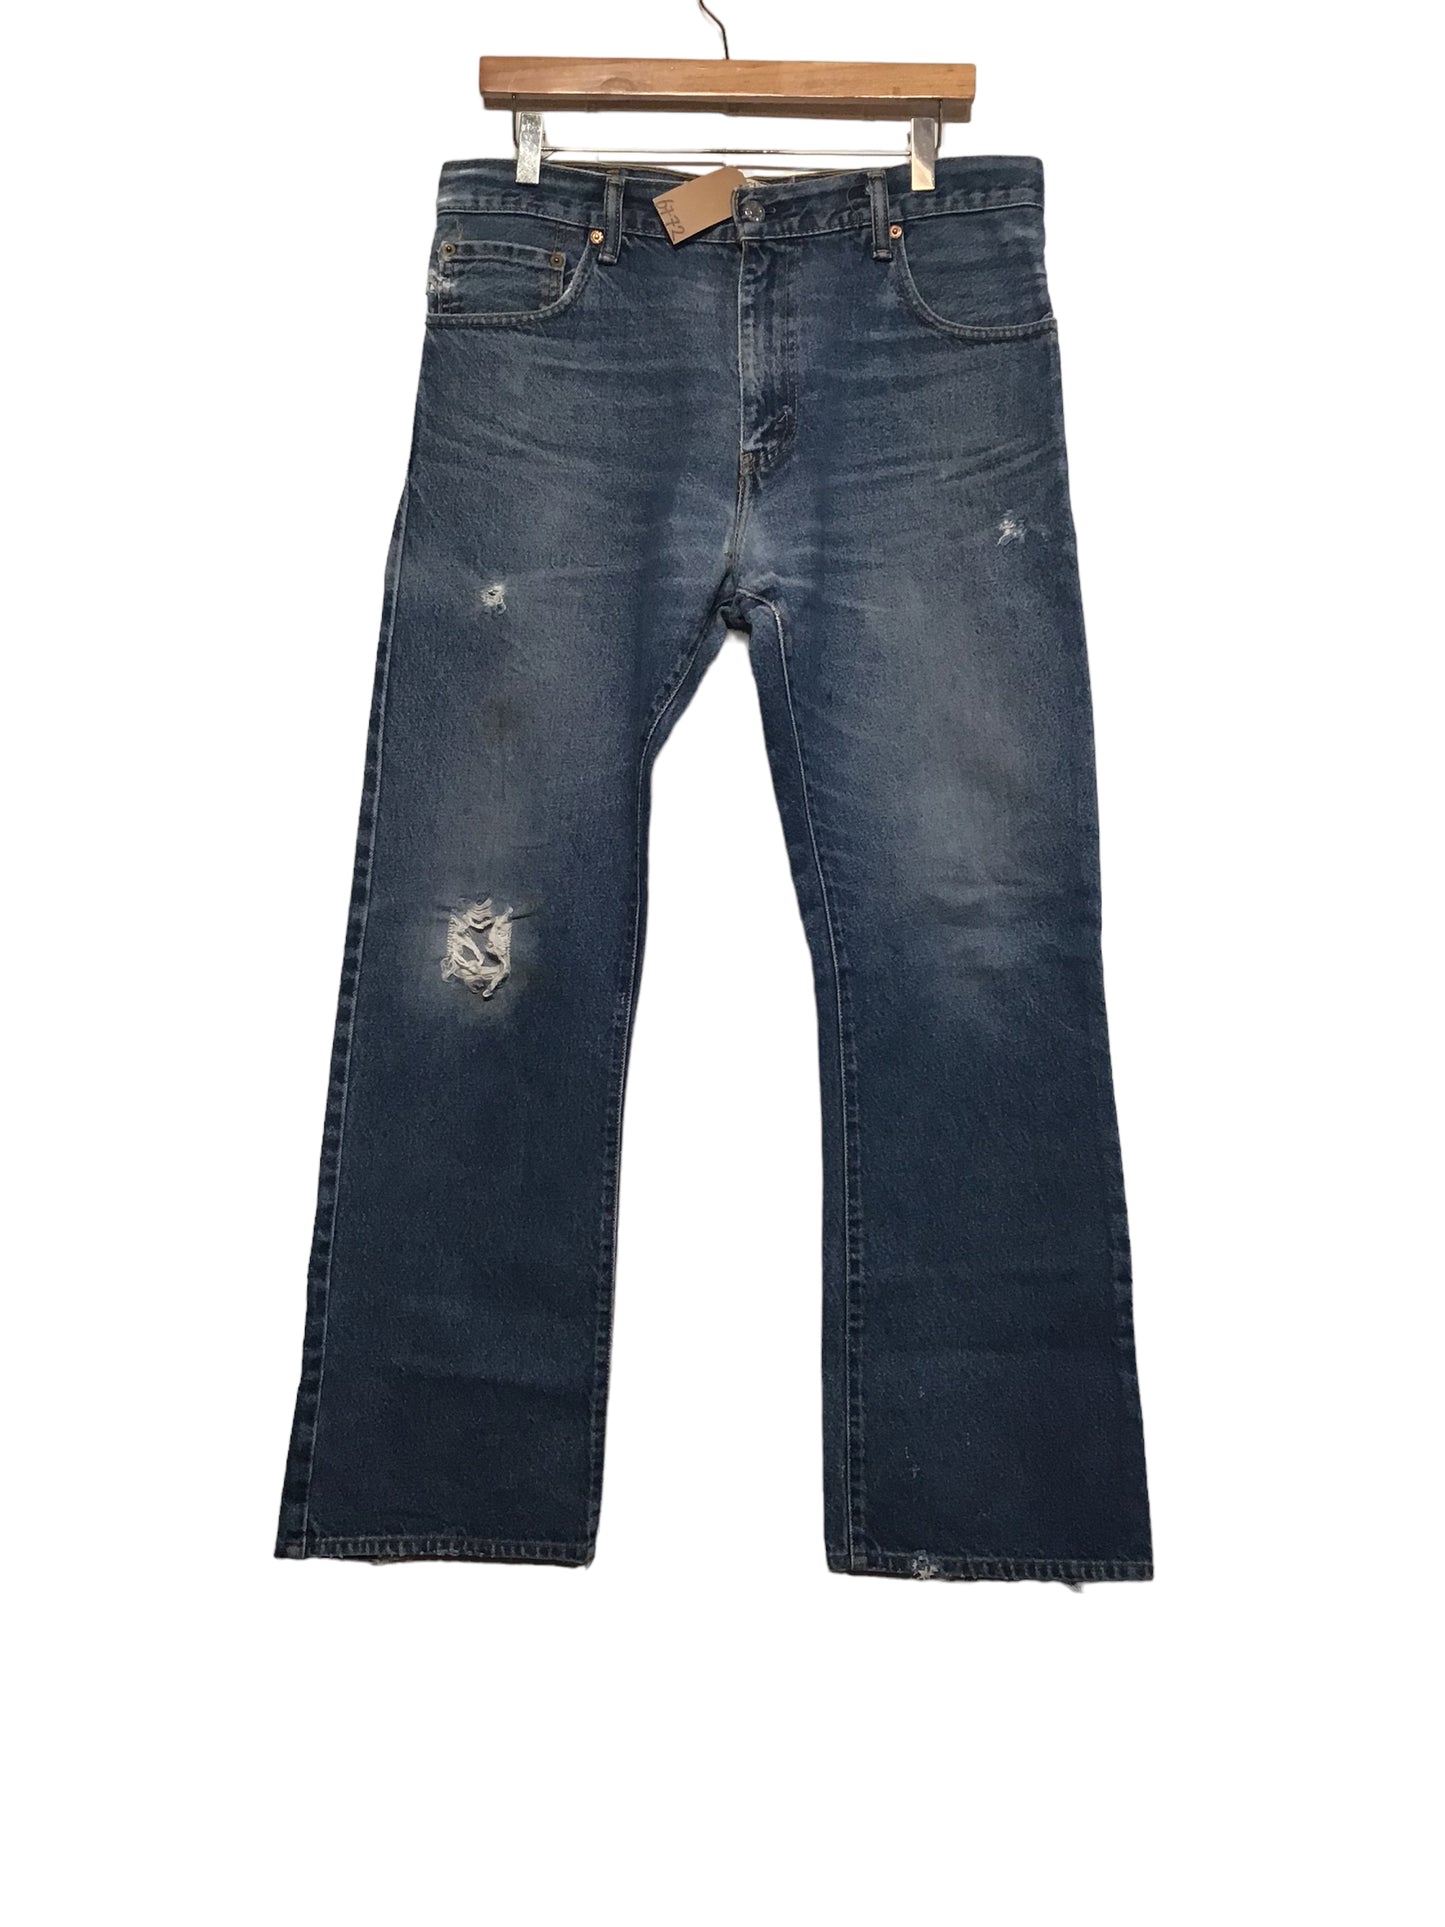 Levi 517 Jeans (33x32)